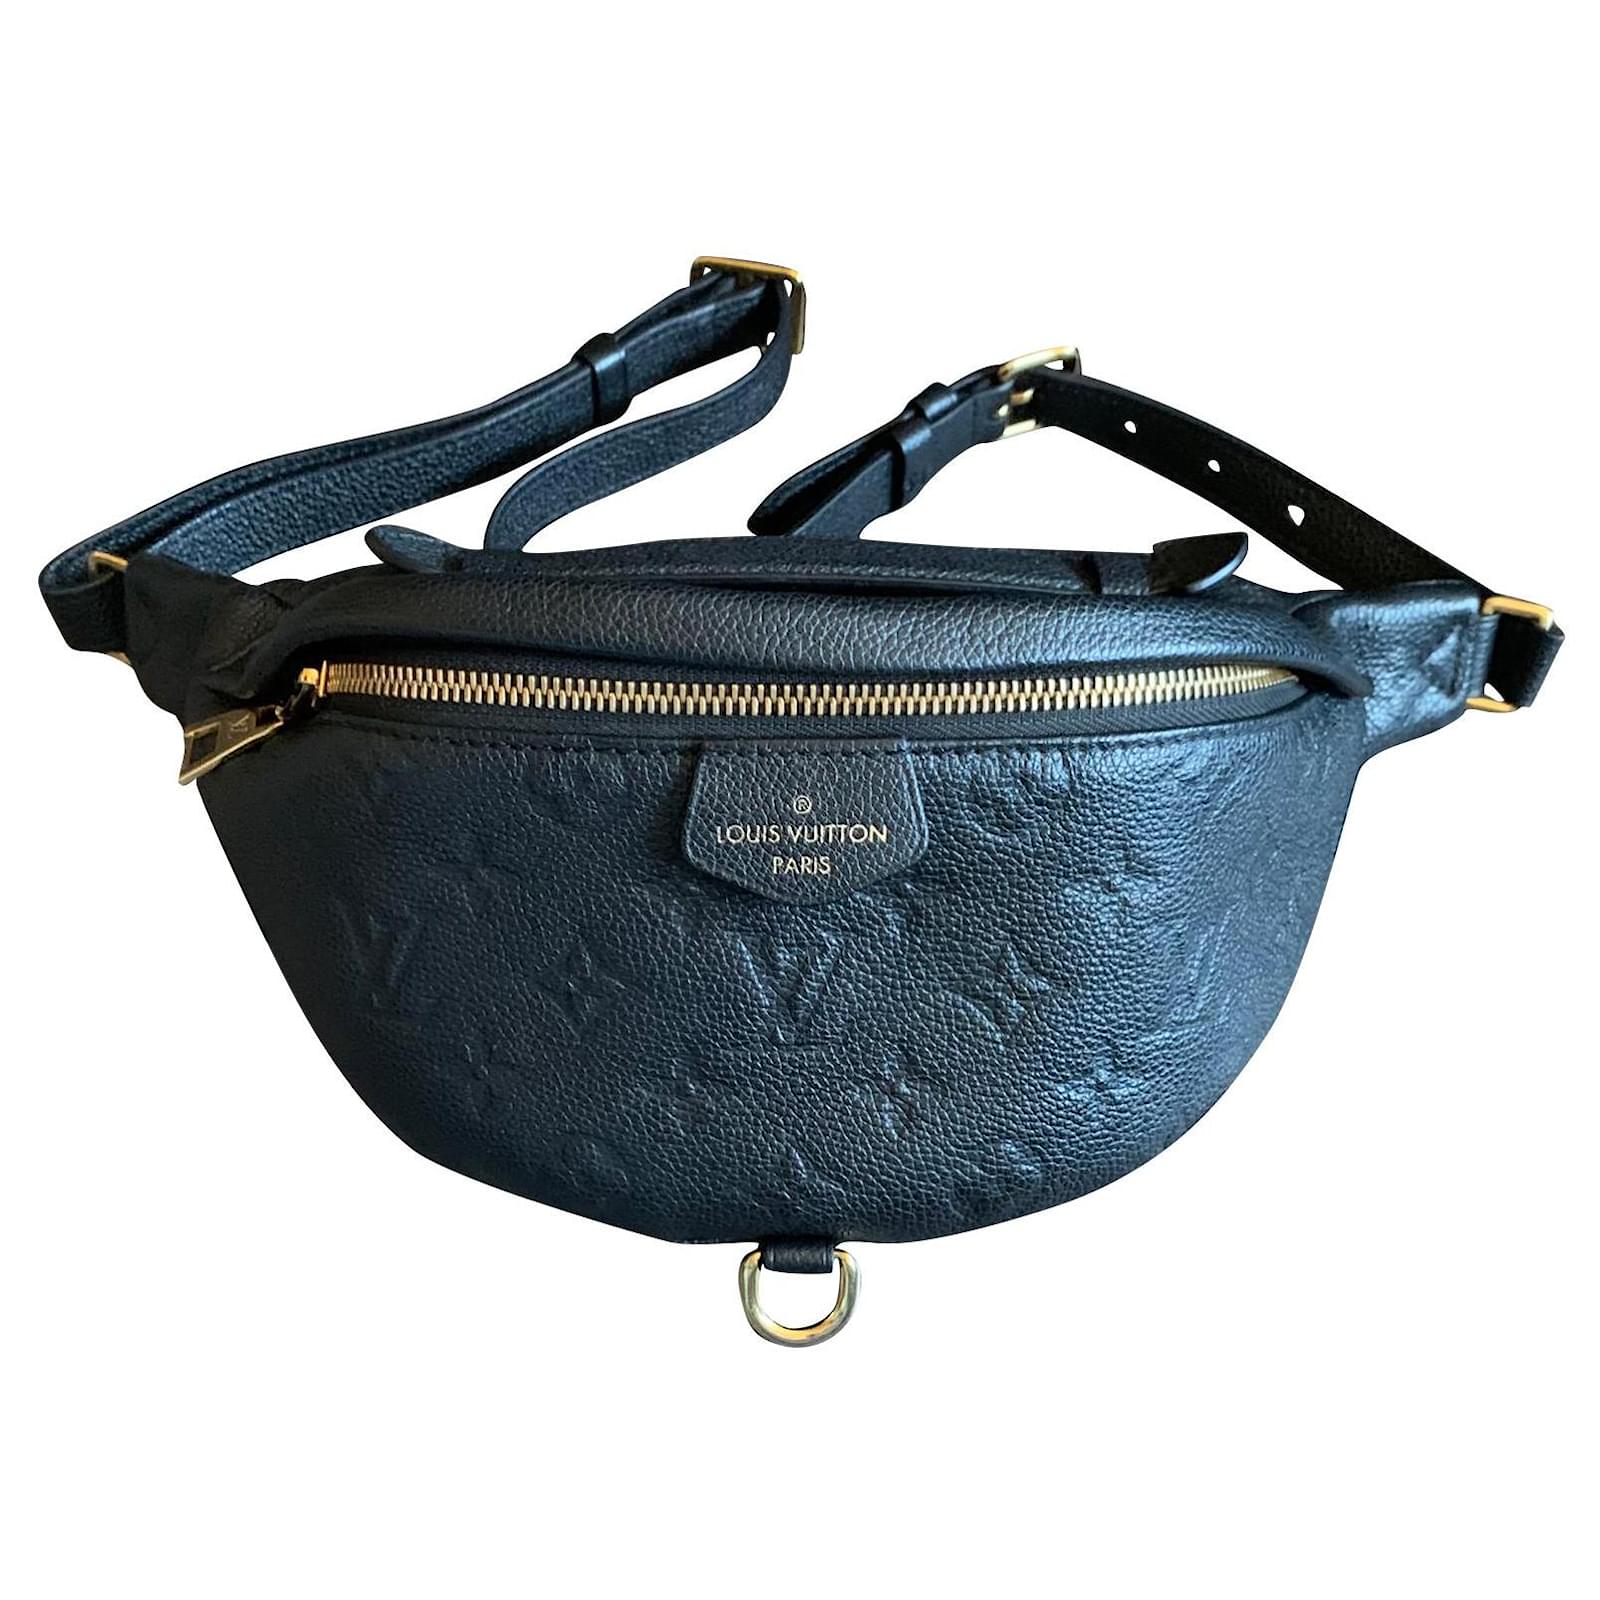 Rare LOUIS VUITTON Black Bumbag Monogram Empriente Belt Bag Unisex  eBay